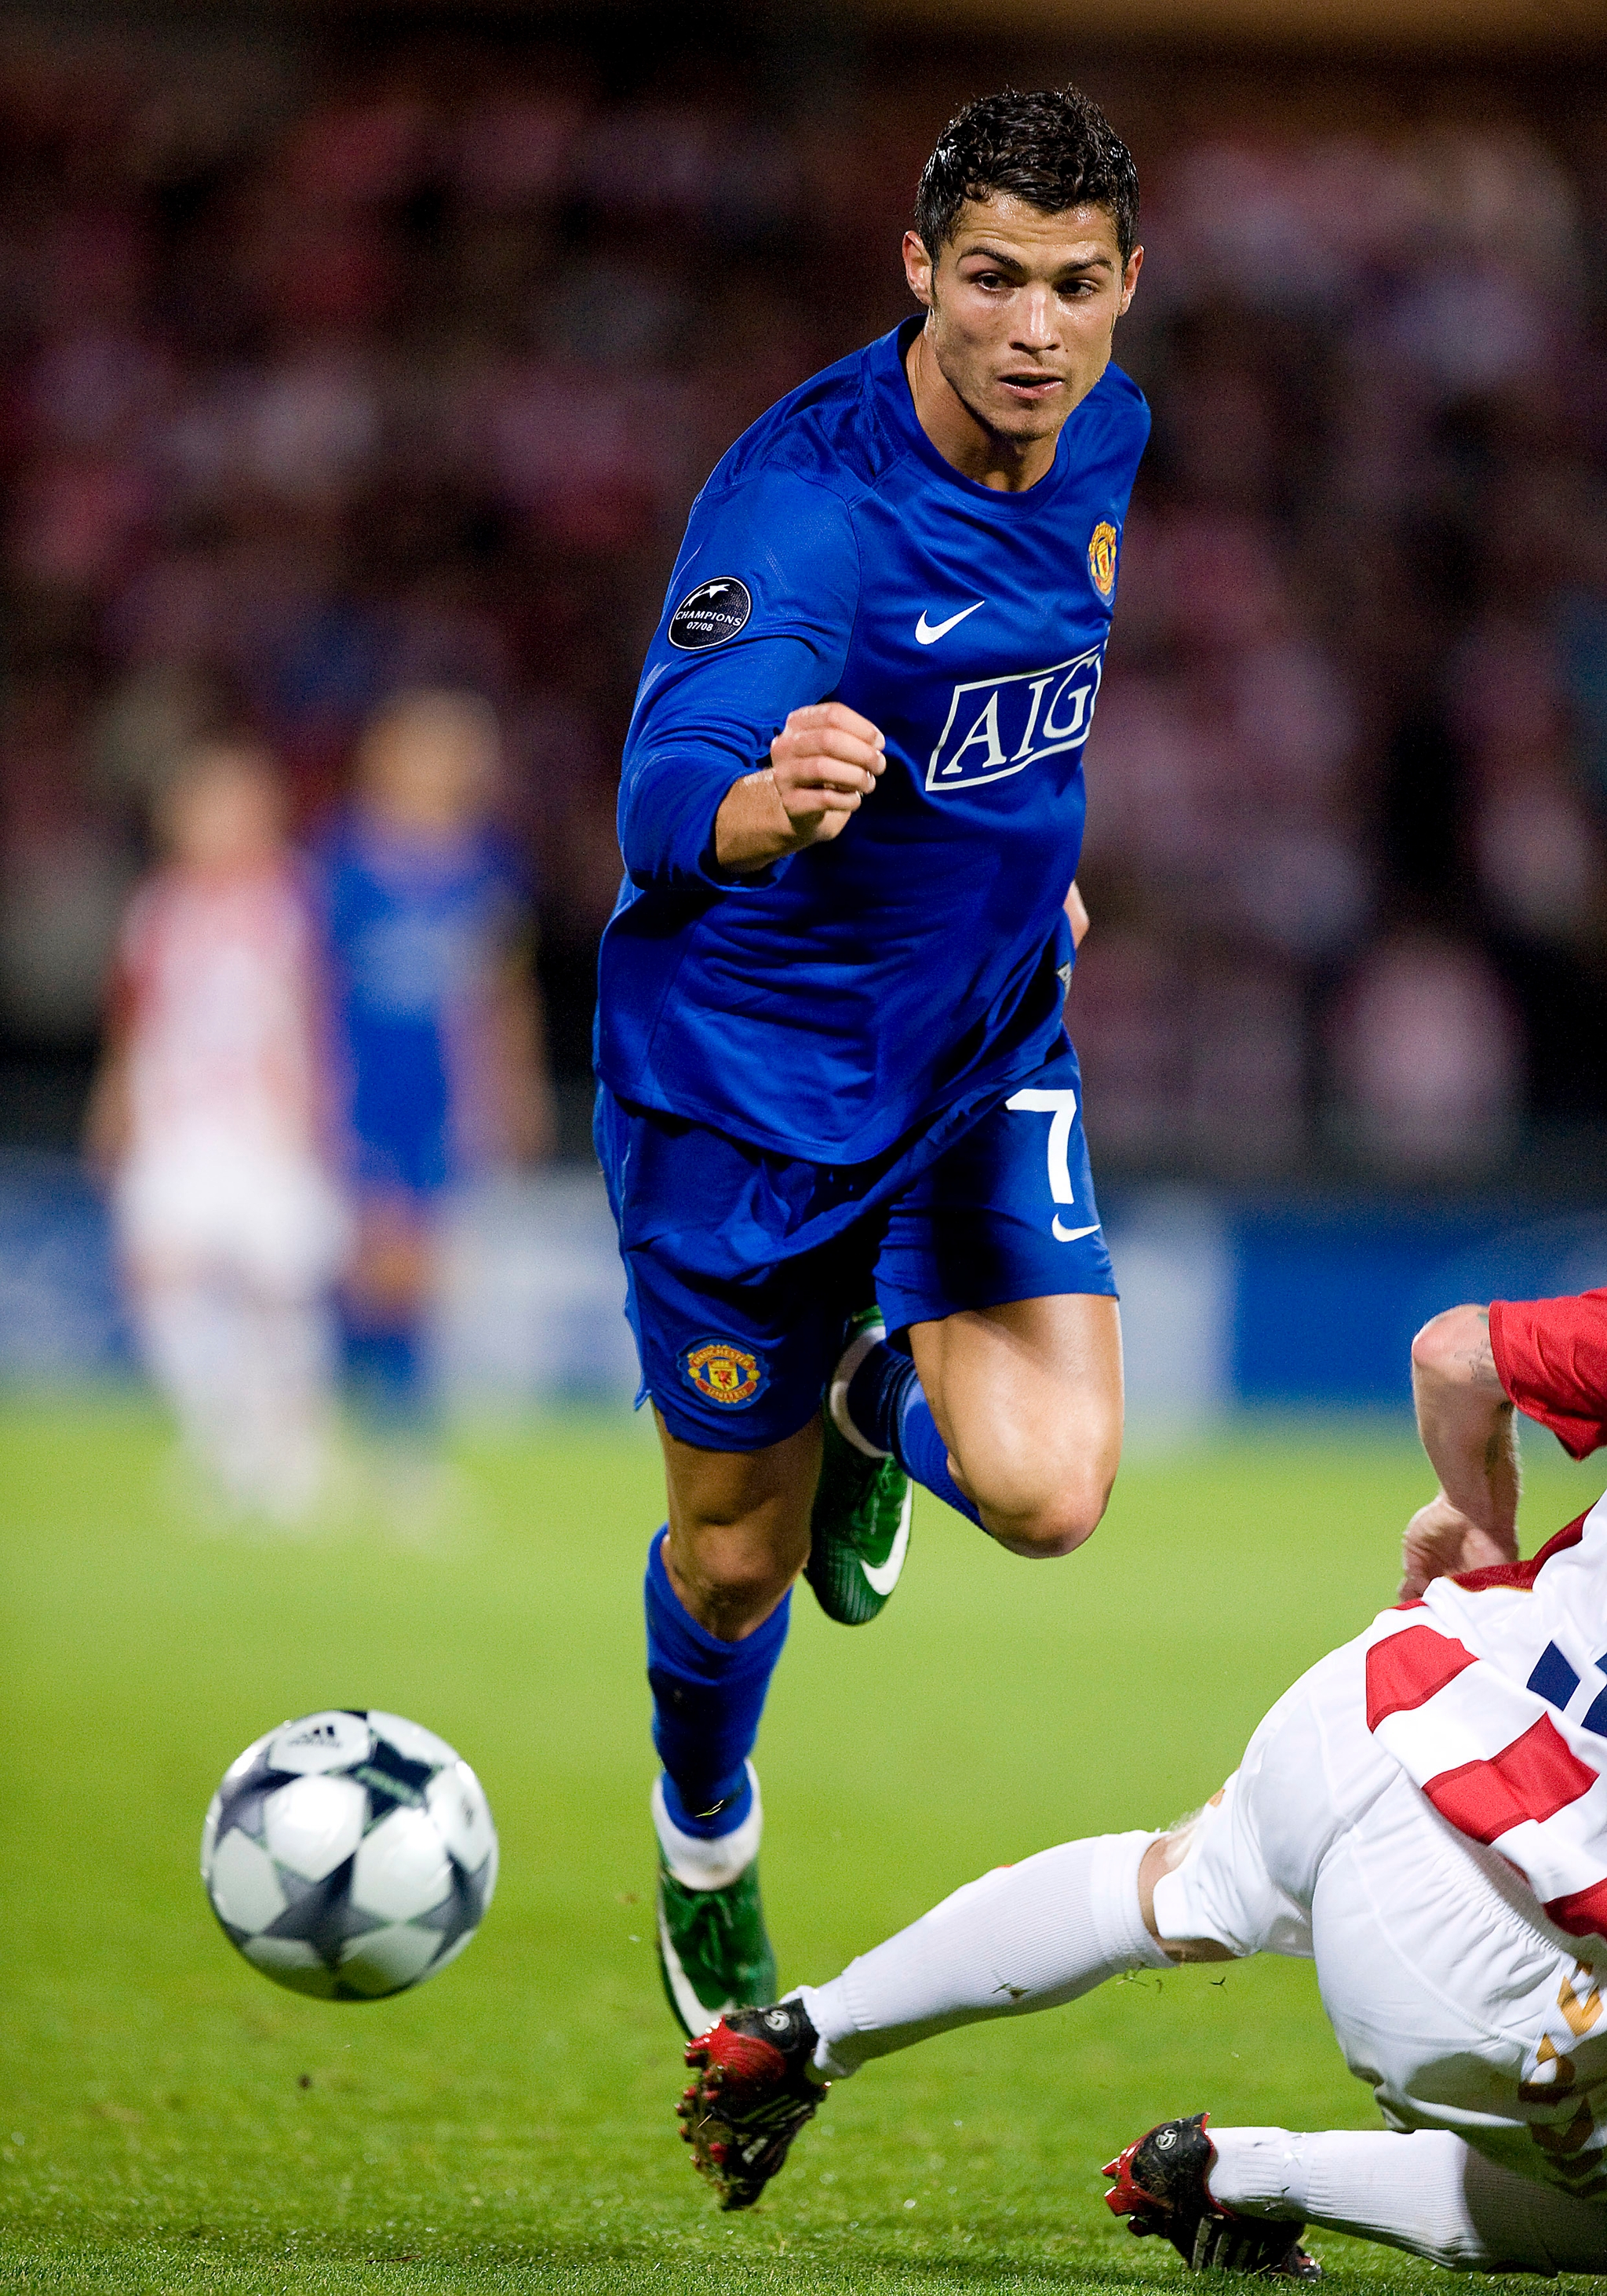 Cristiano Ronaldo spillede endnu en stor kamp, da Manchester United gæstede AaB. Foto: fodboldbilleder.dk